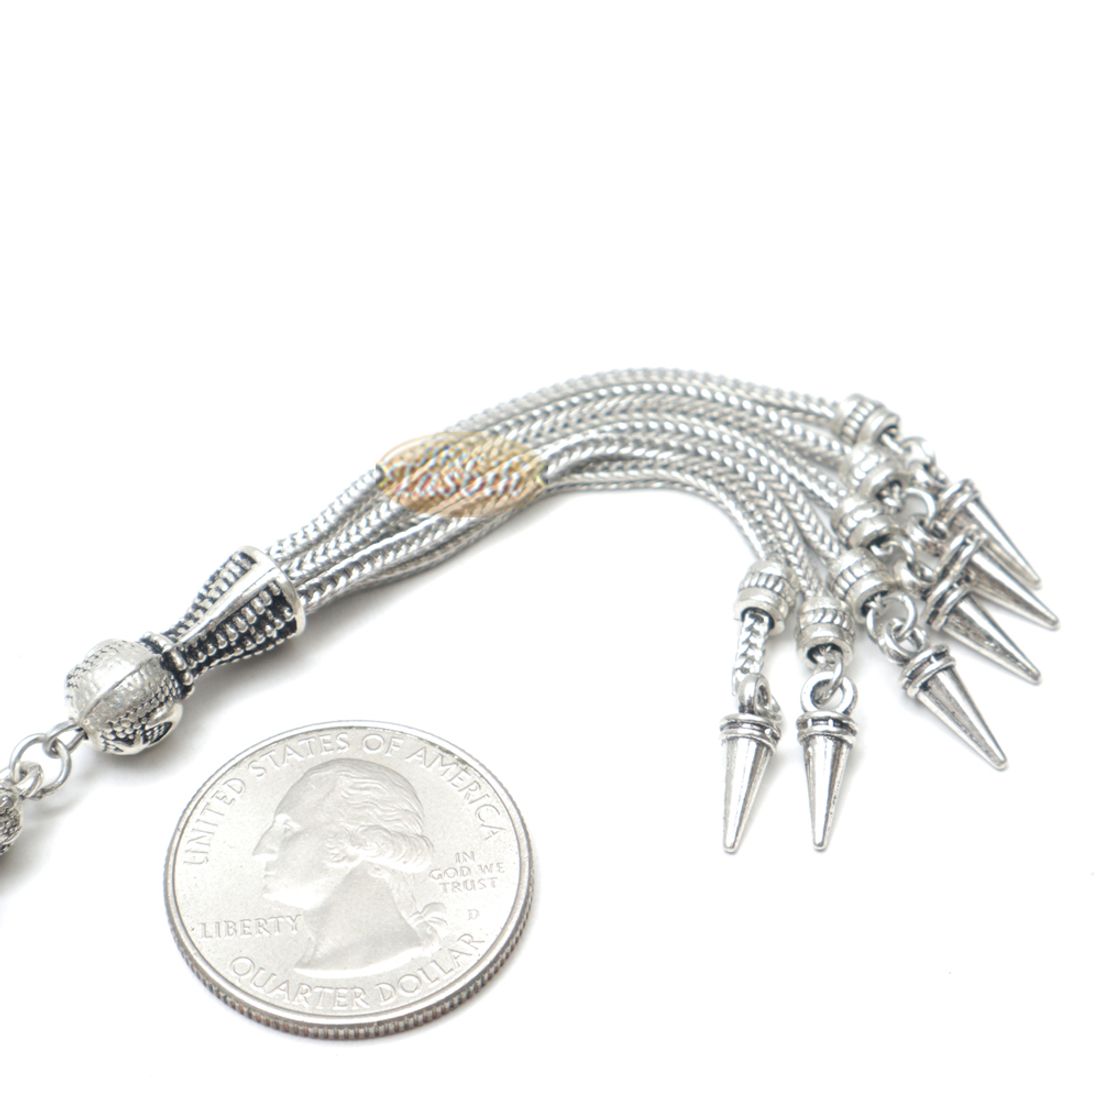 Tamarind Wood Tasbih – 8mm Beads with Ornamental Silver-tone Fox-tail Chain Tassel